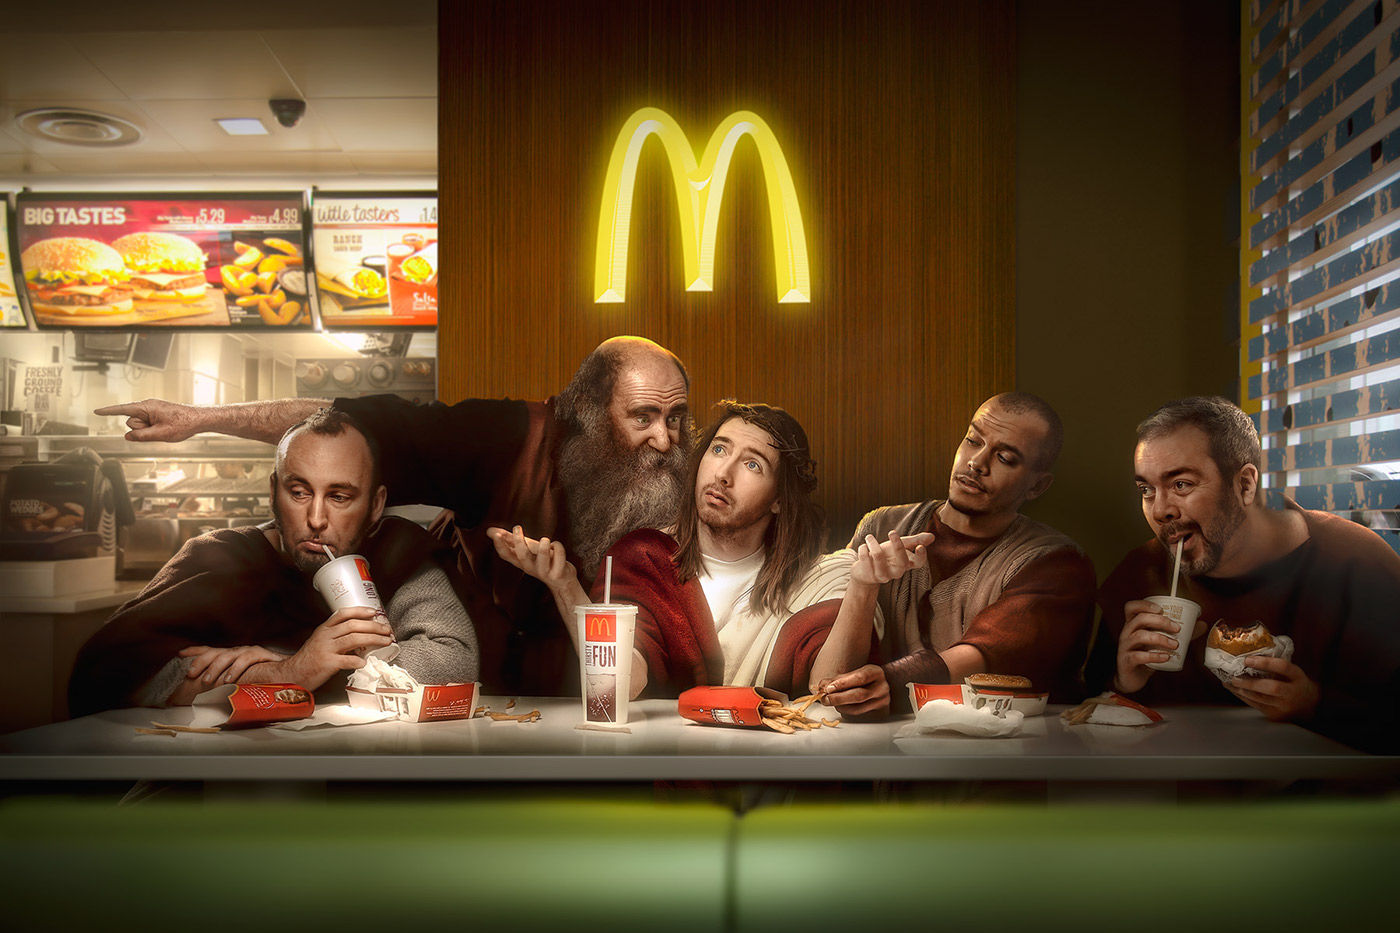 disciples McDonalds cadillac religion jesus portraits mercedes concept conceptual humor